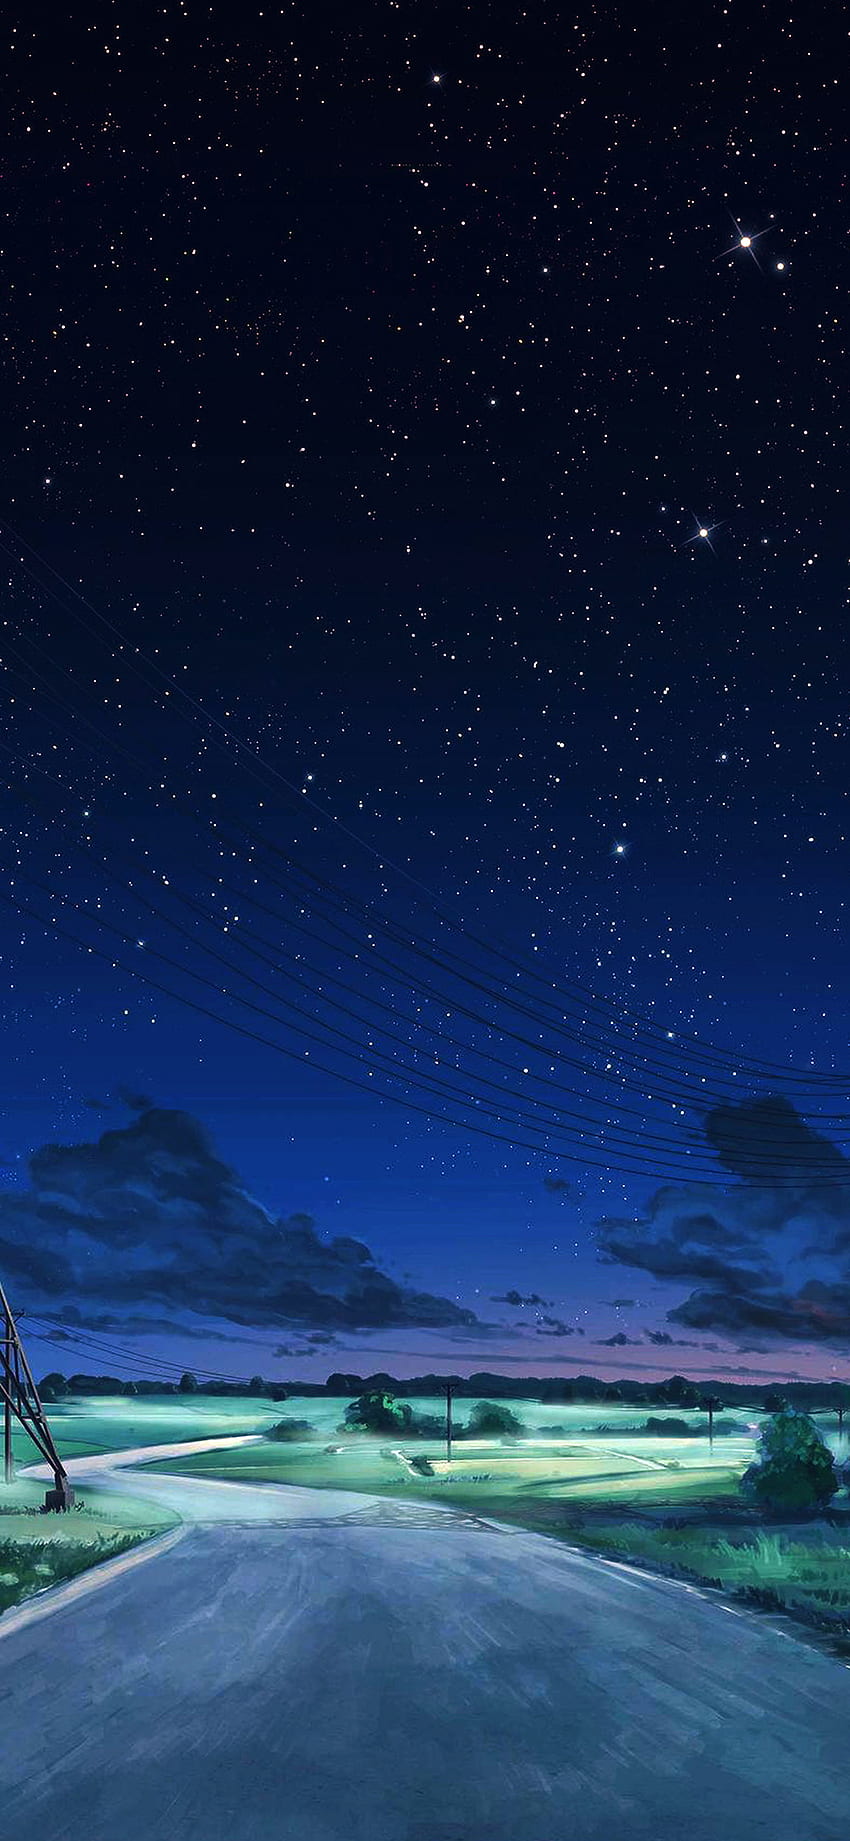 iPhone X . arseniy chebynkin langit malam bintang seni ilustrasi biru anime dark, Blue Sky and Stars wallpaper ponsel HD